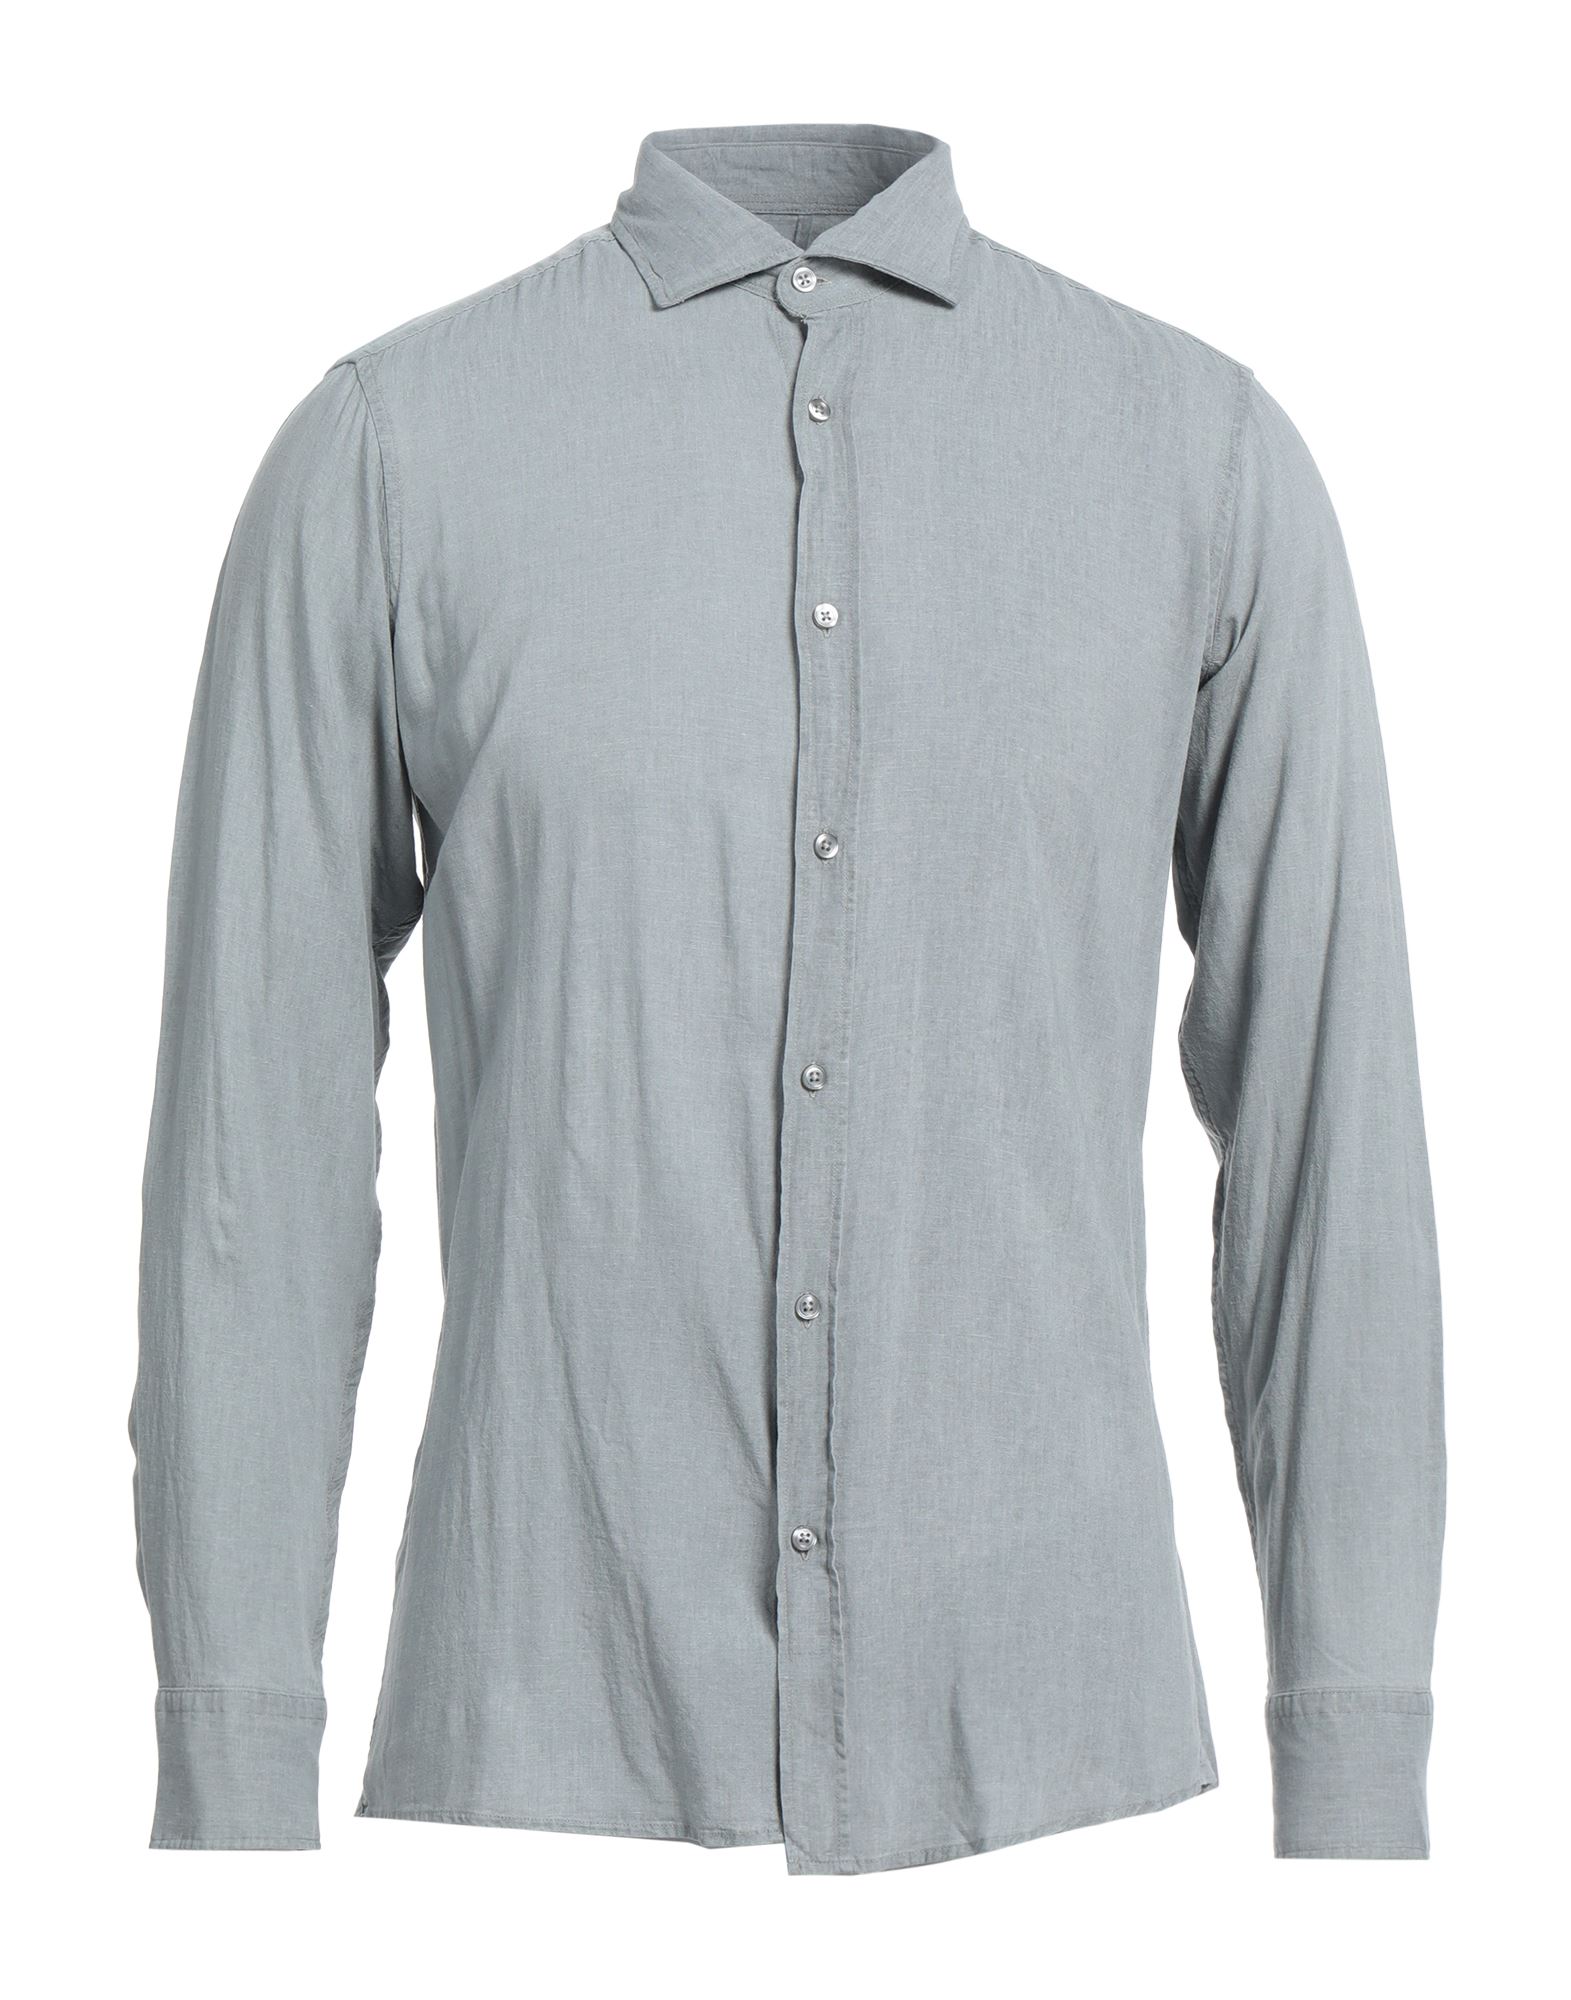 R3d Wöôd Man Shirt Light Grey Size L Linen